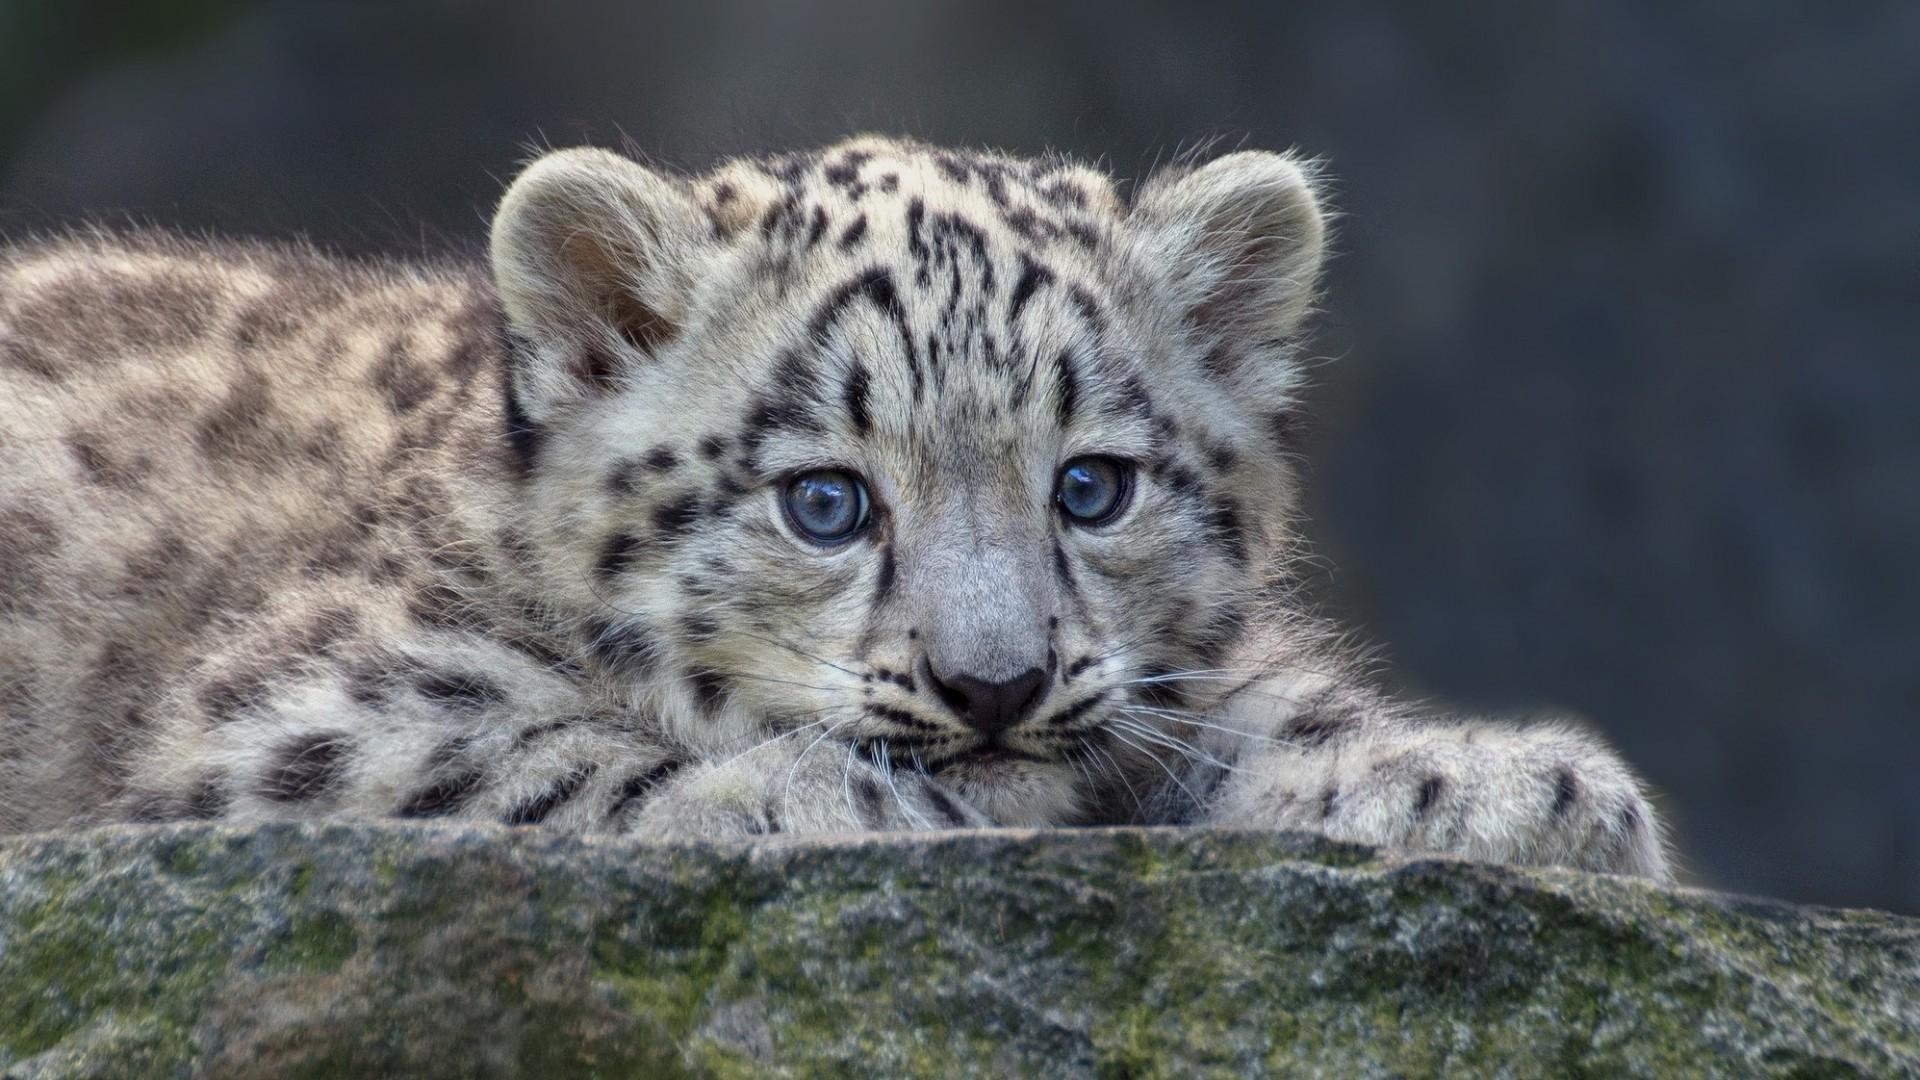 smbup snow leopard version